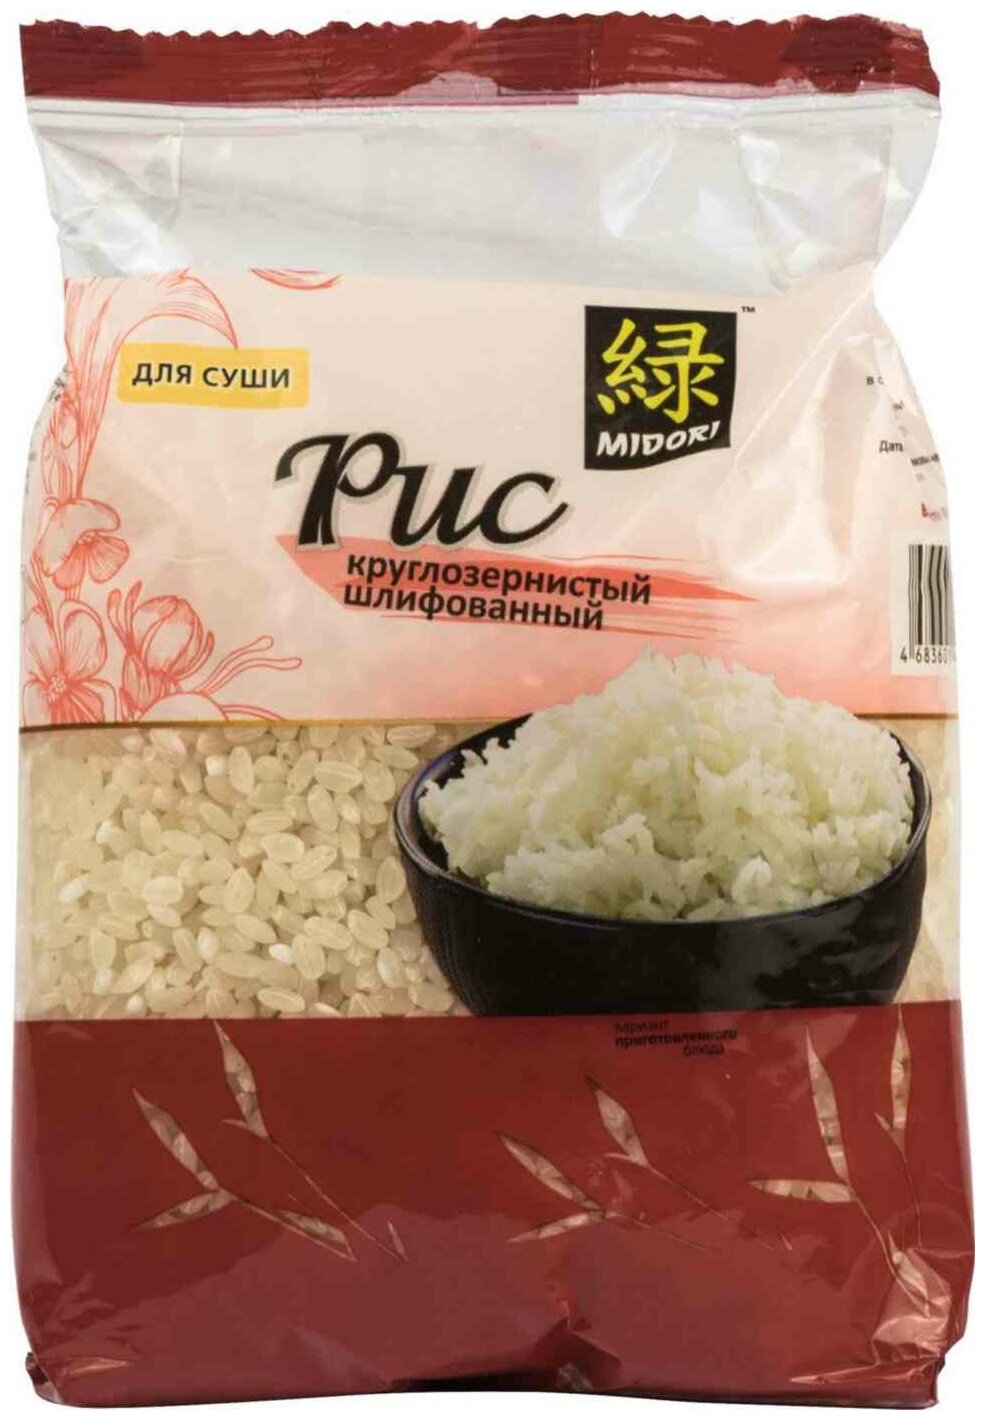 Отзывы о рисе для суши фото 54